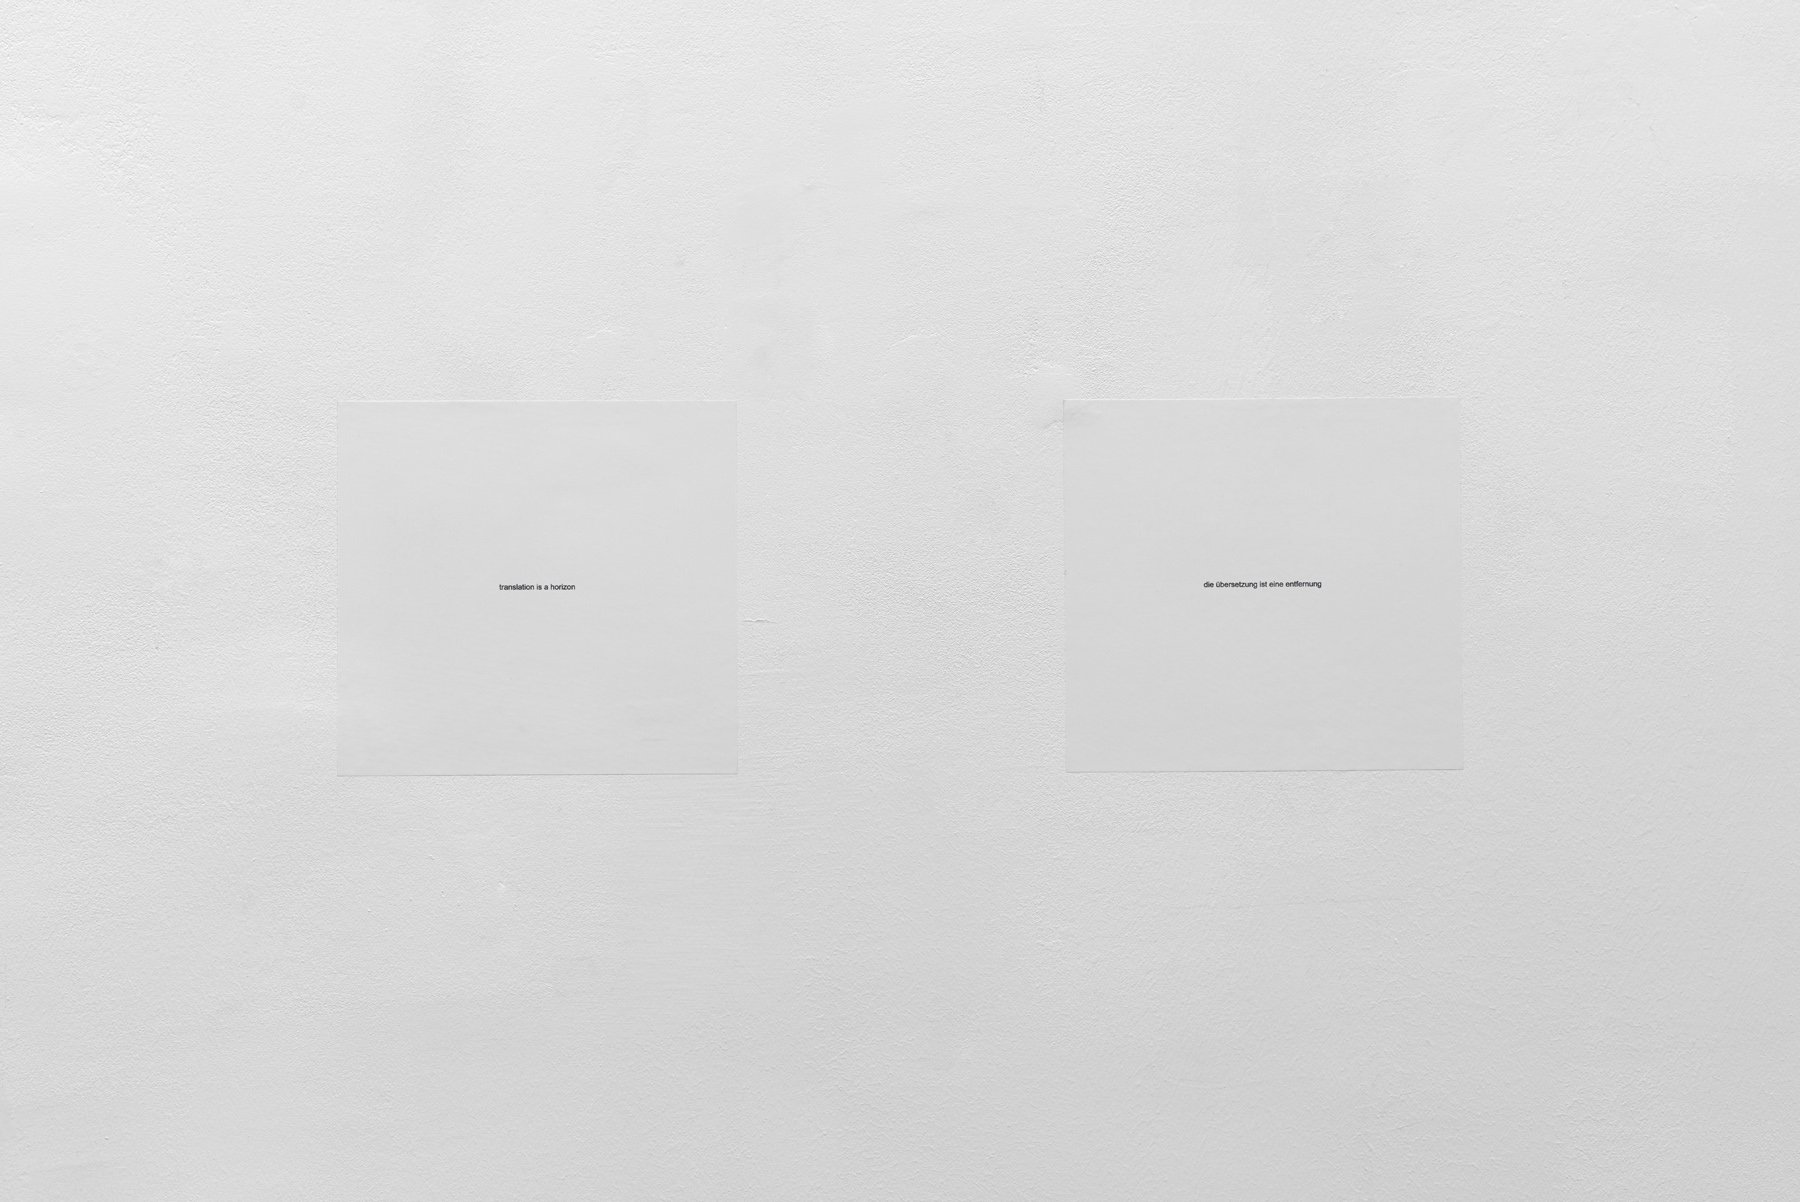 Julien Bismuthtranslation is a horizon / die übersetzung ist eine entfernung, 2019Inkjet print, digital file, diptychEach 29.7 x 27.9 cm